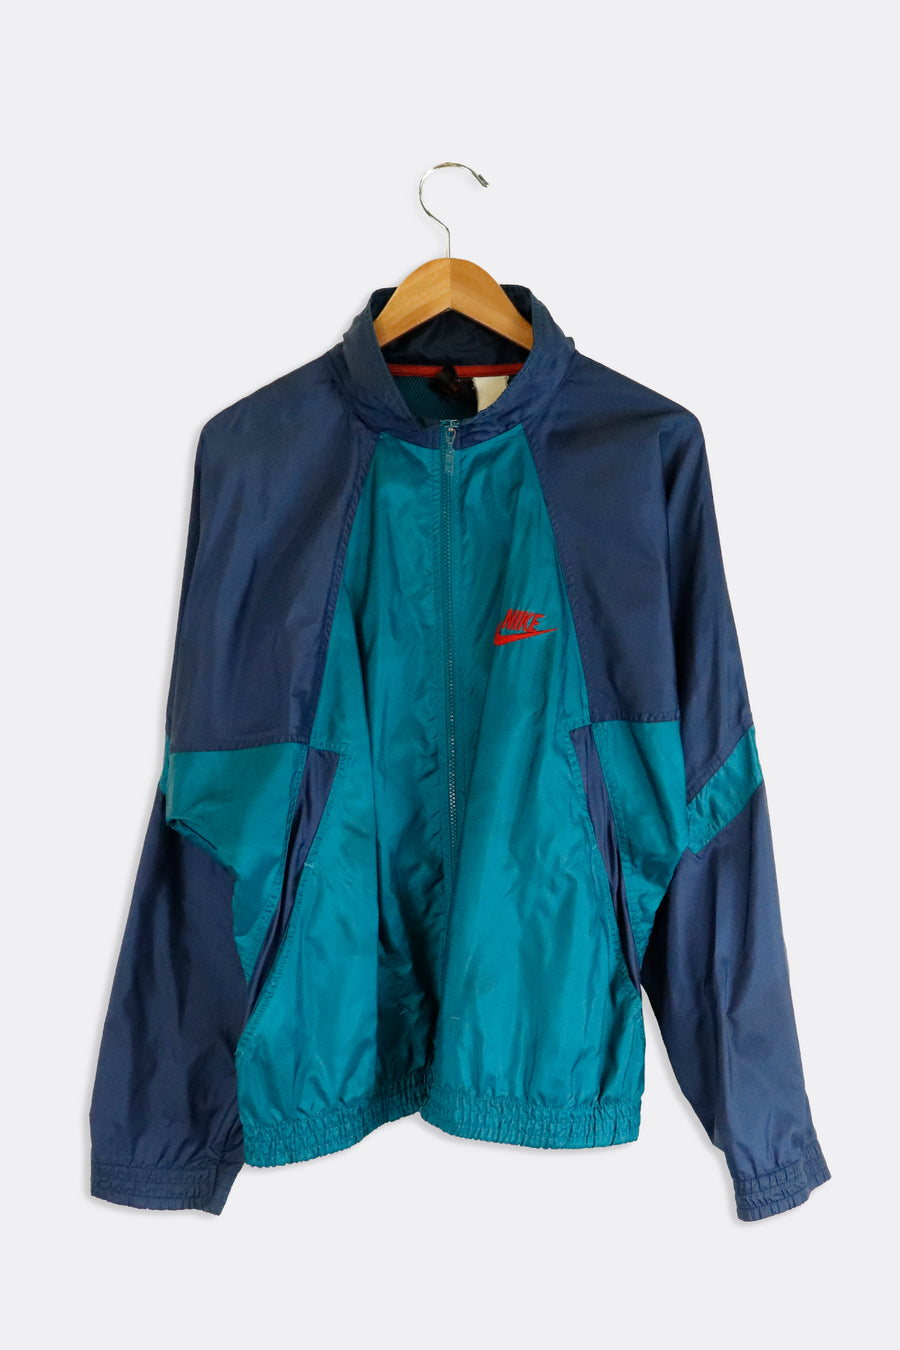 Vintage Nike Blue Multi Colored Windbreaker Jacket